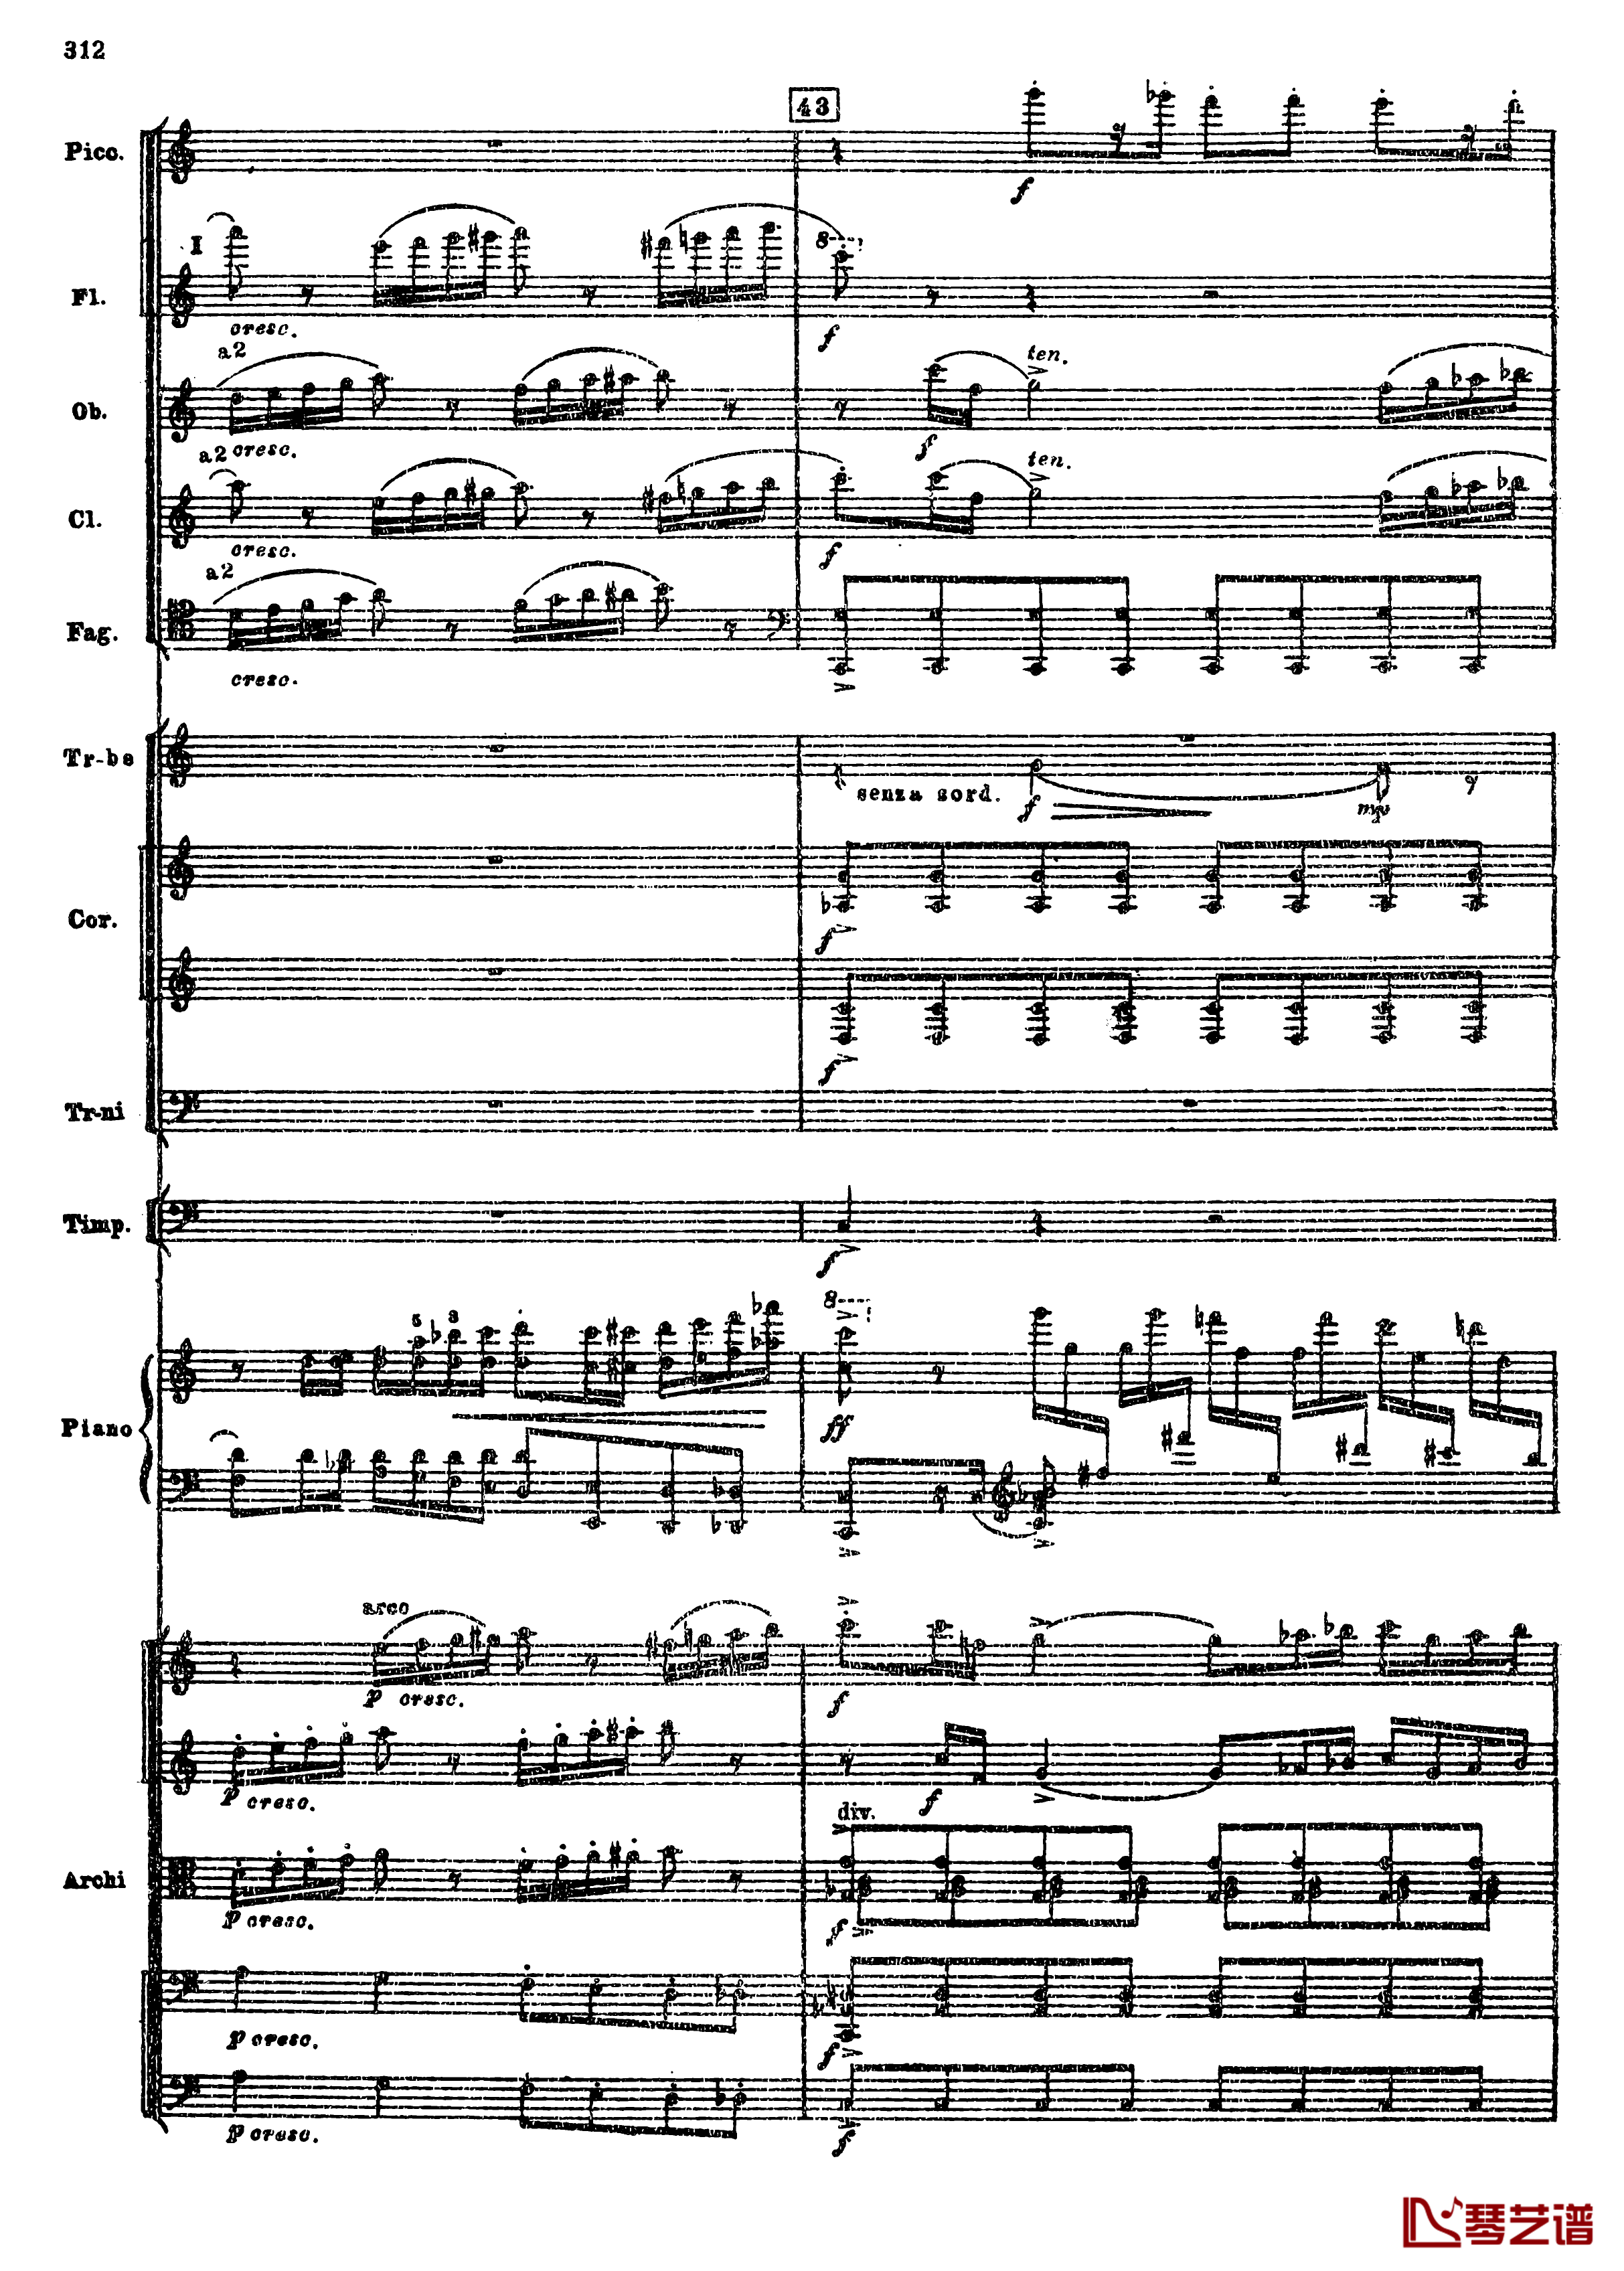 普罗科菲耶夫第三钢琴协奏曲钢琴谱-总谱-普罗科非耶夫44